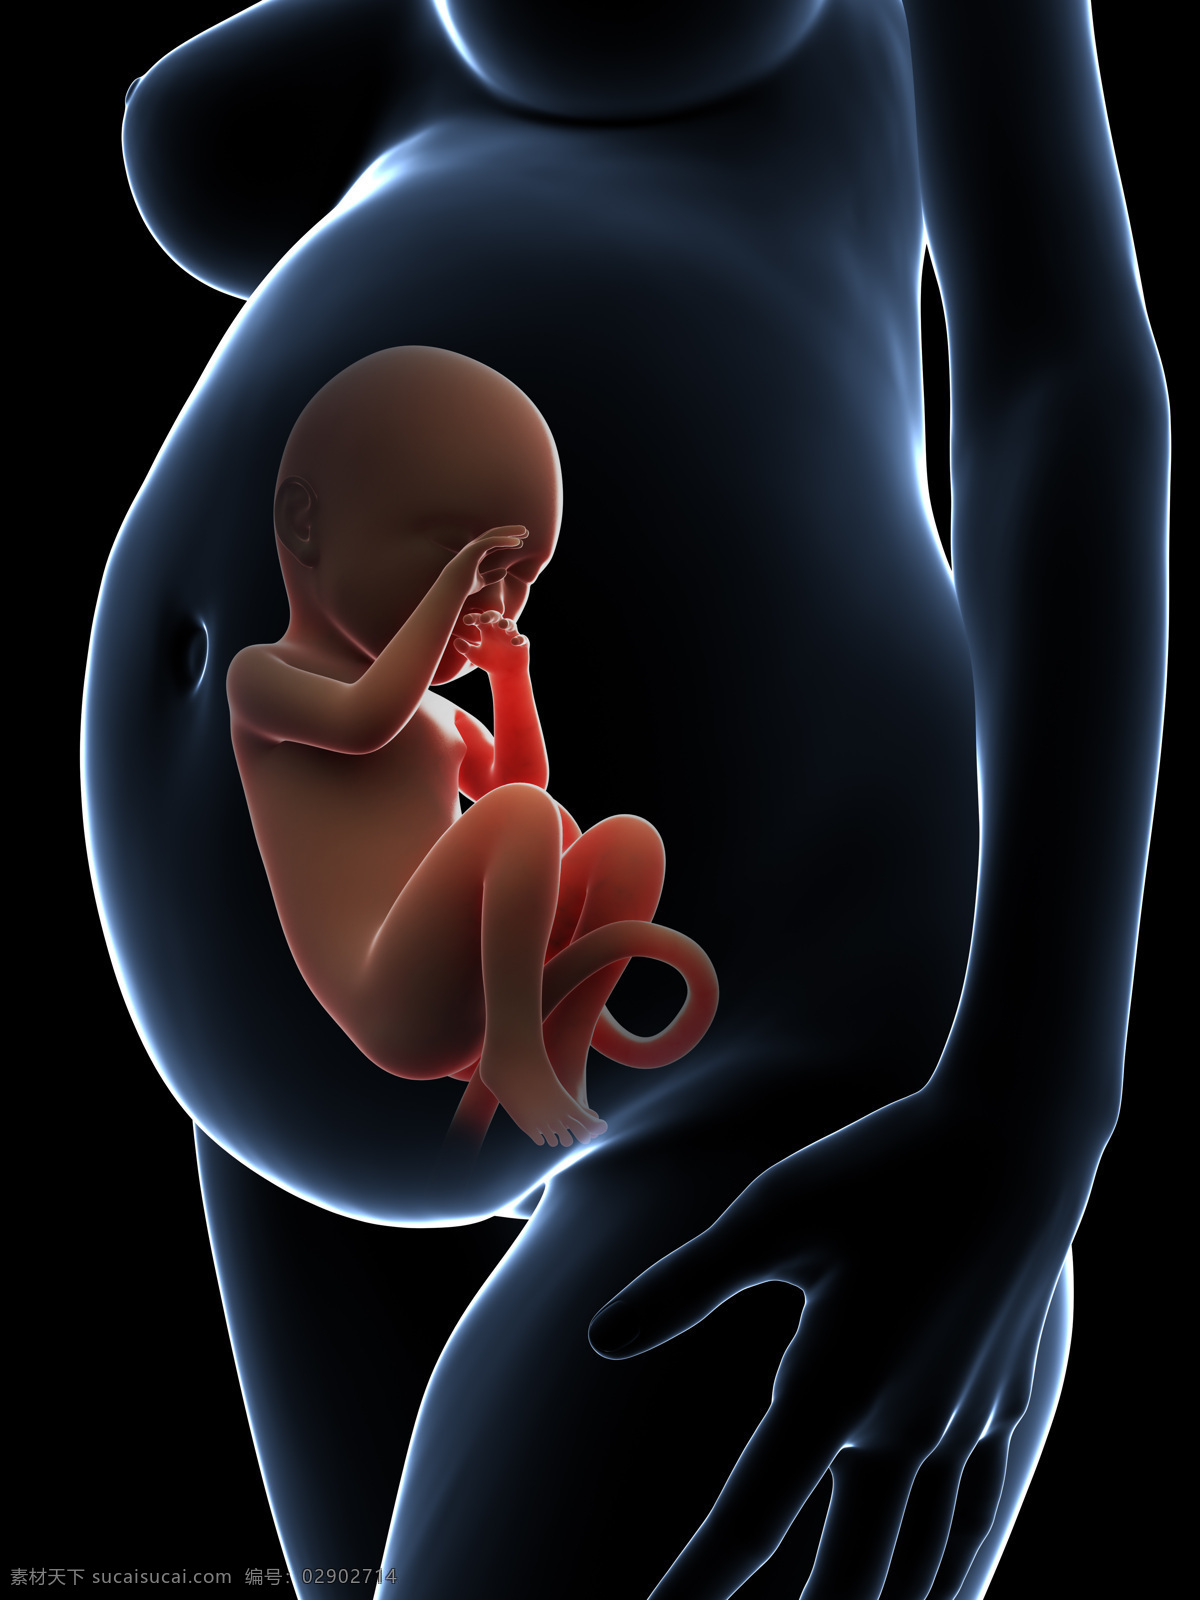 孕妇 肚 中 胎儿 婴儿 发育 孕育 胚胎发育 儿童图片 人物图片